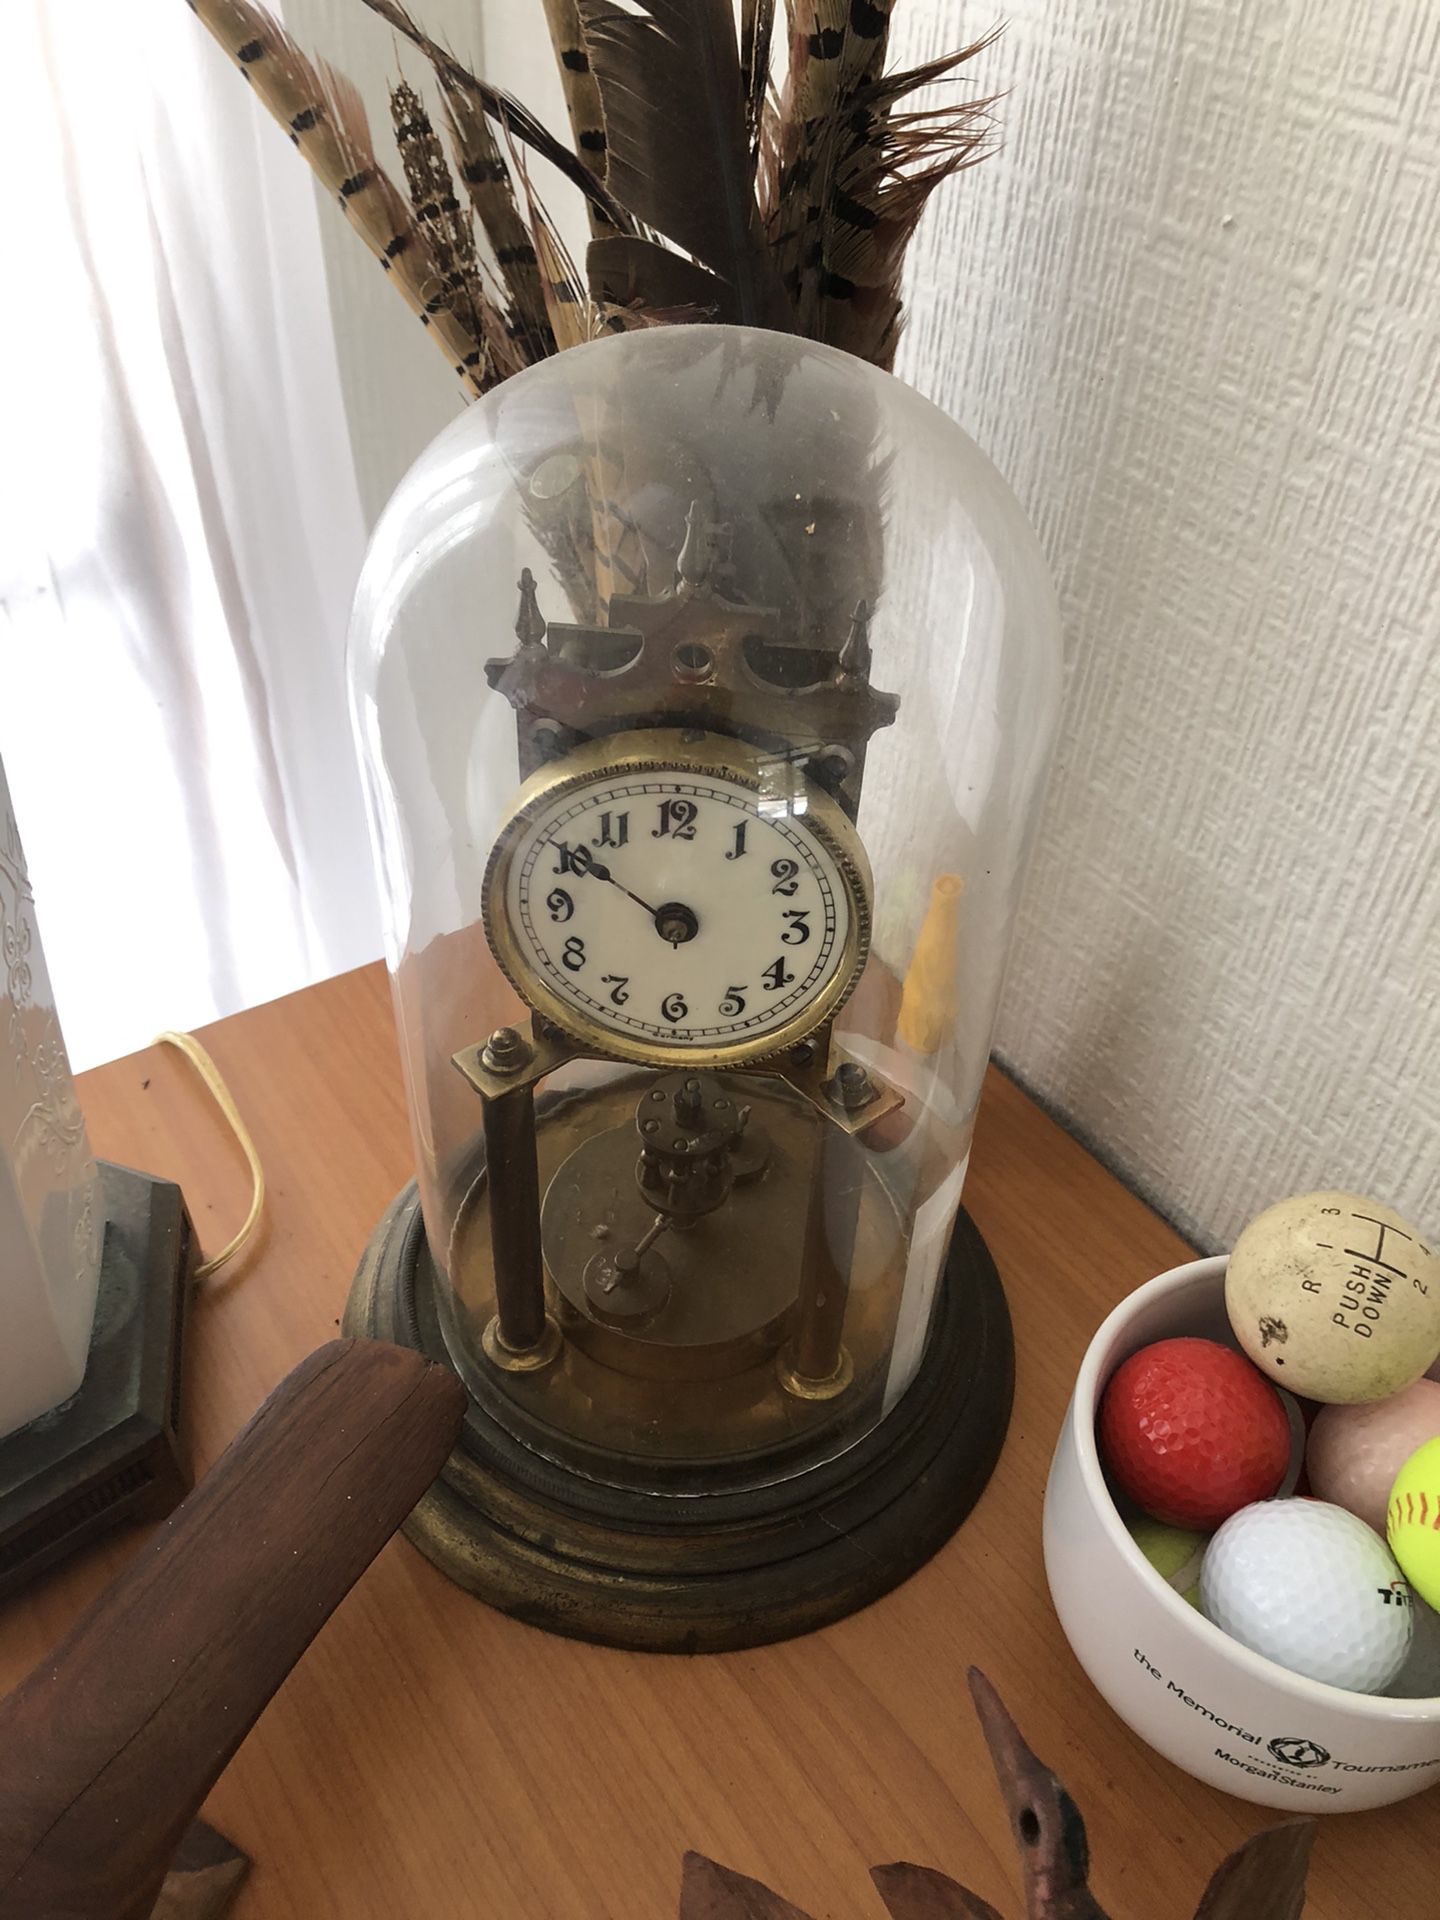 Antique German clock